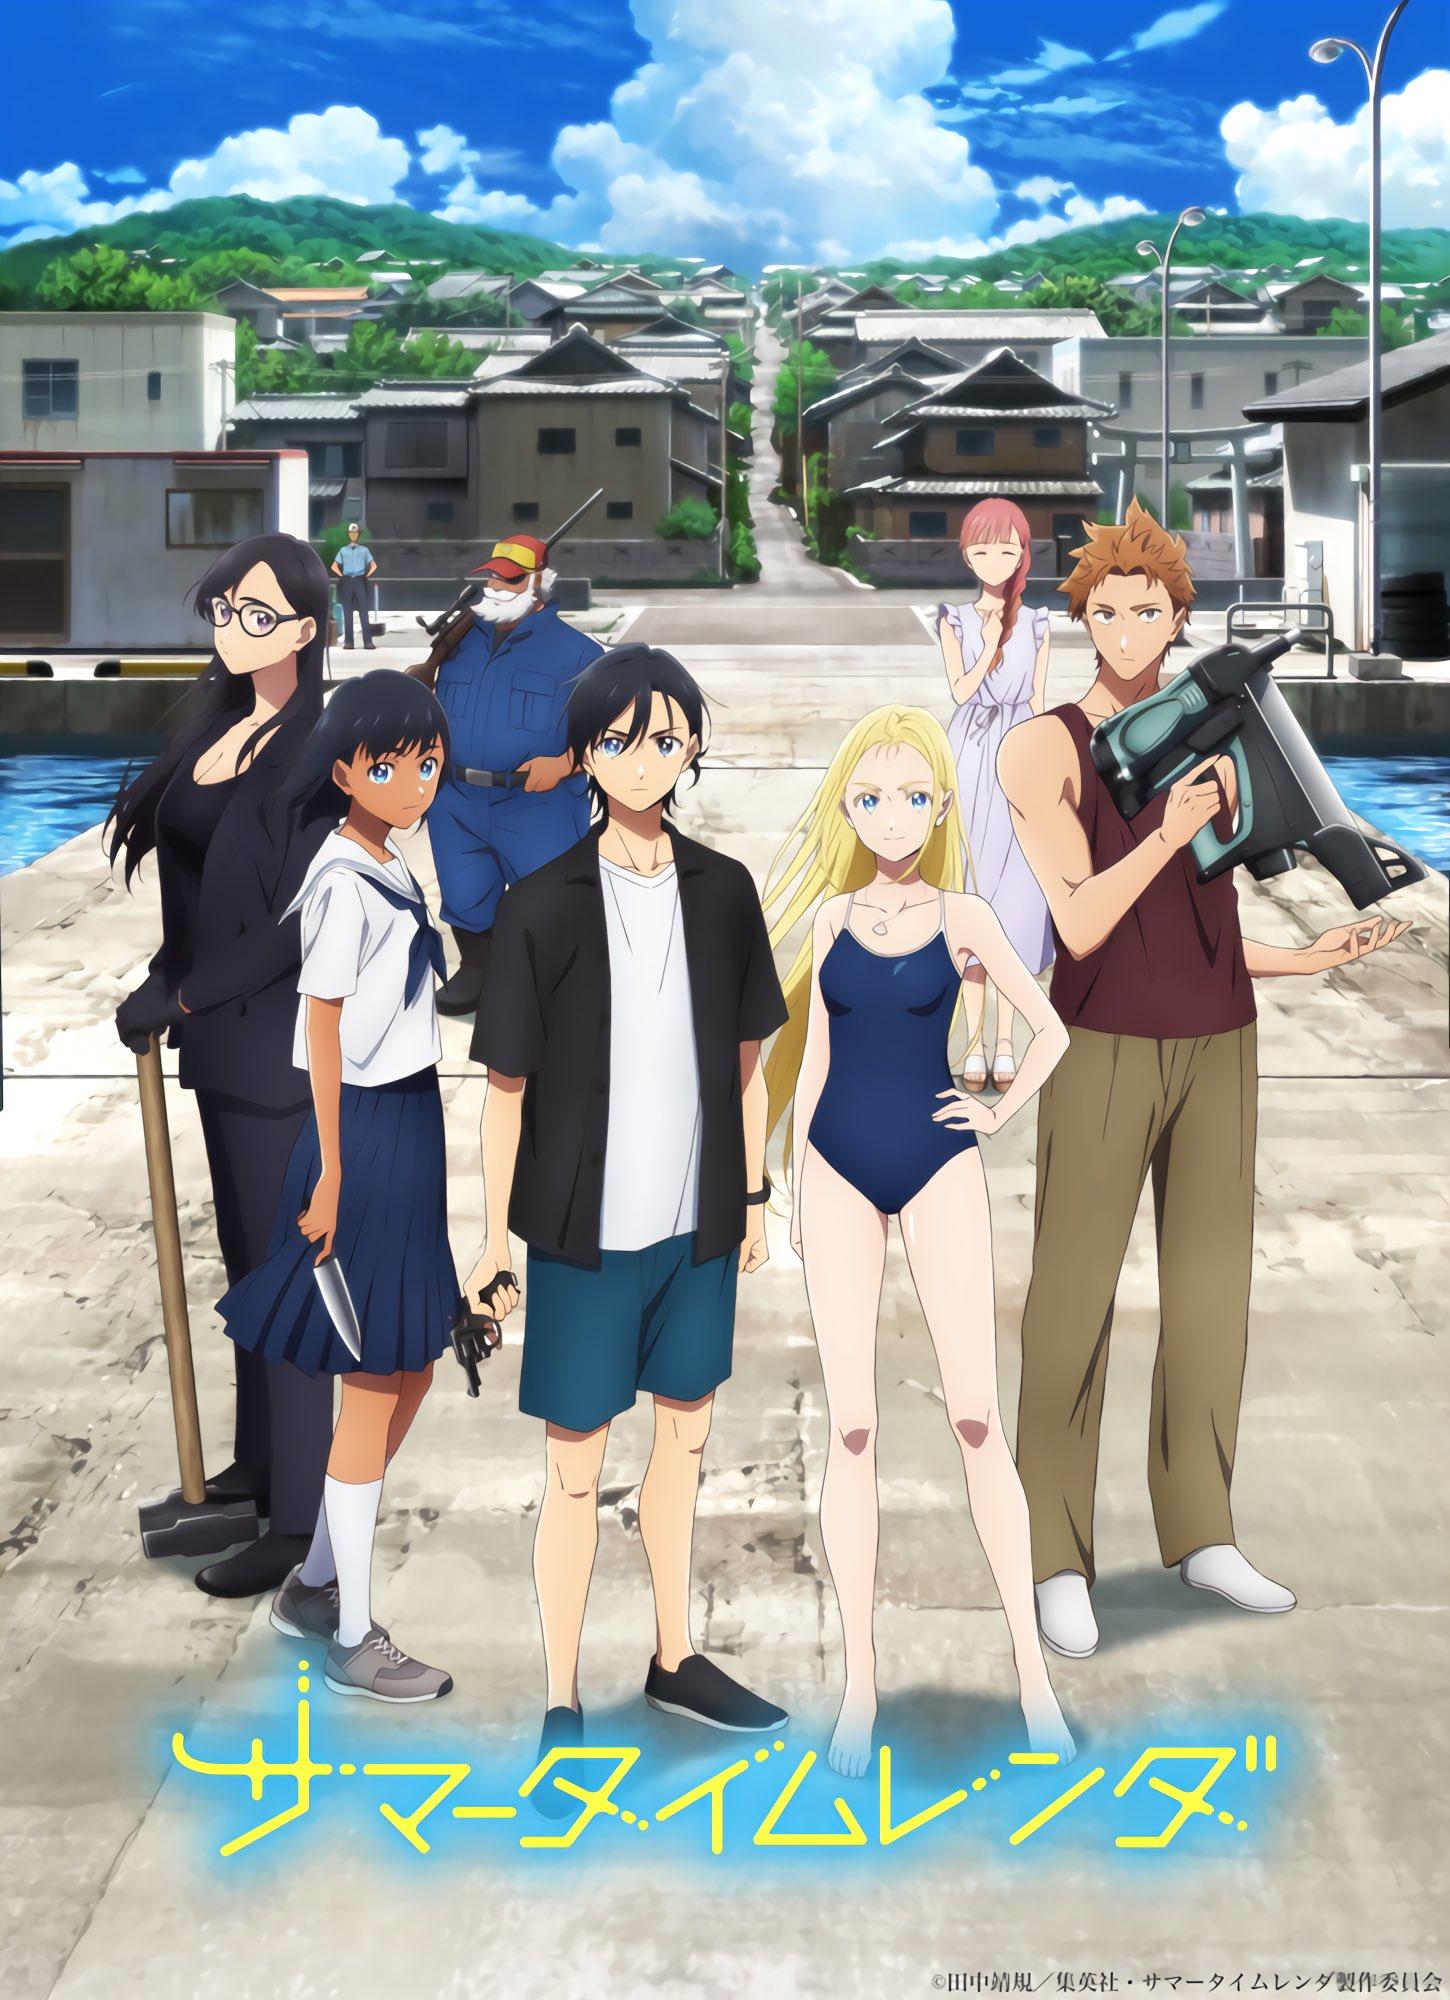 Trailer mới của anime Summer Time Rendering được phát hành